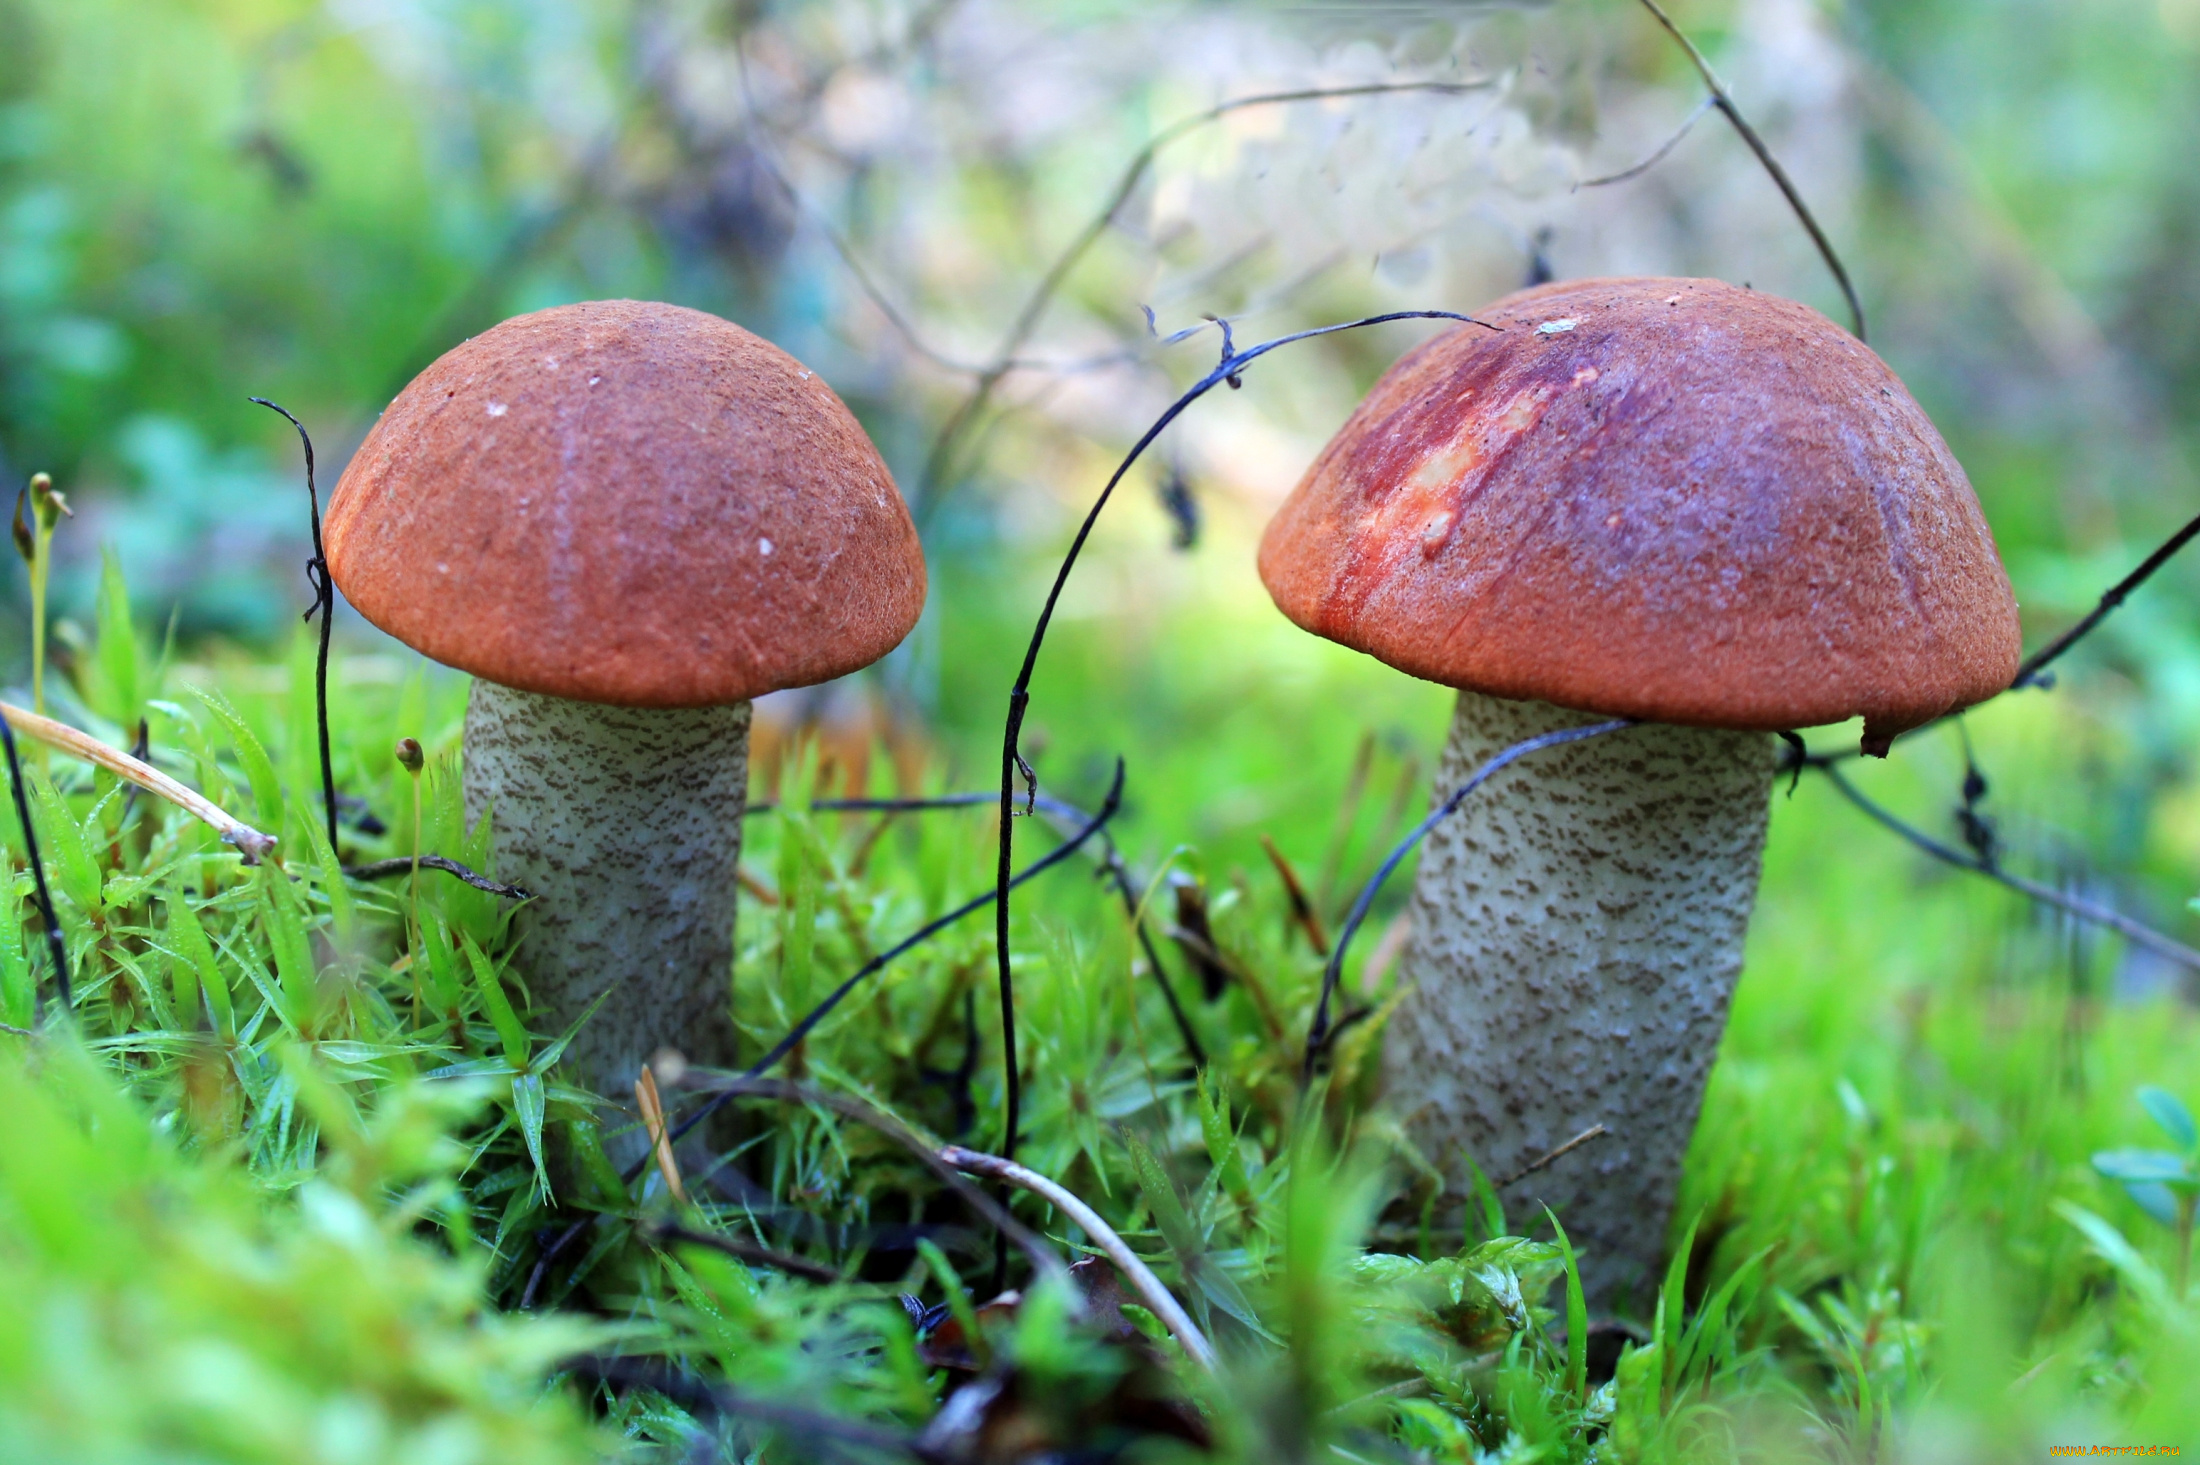 природа, грибы, подосиновики